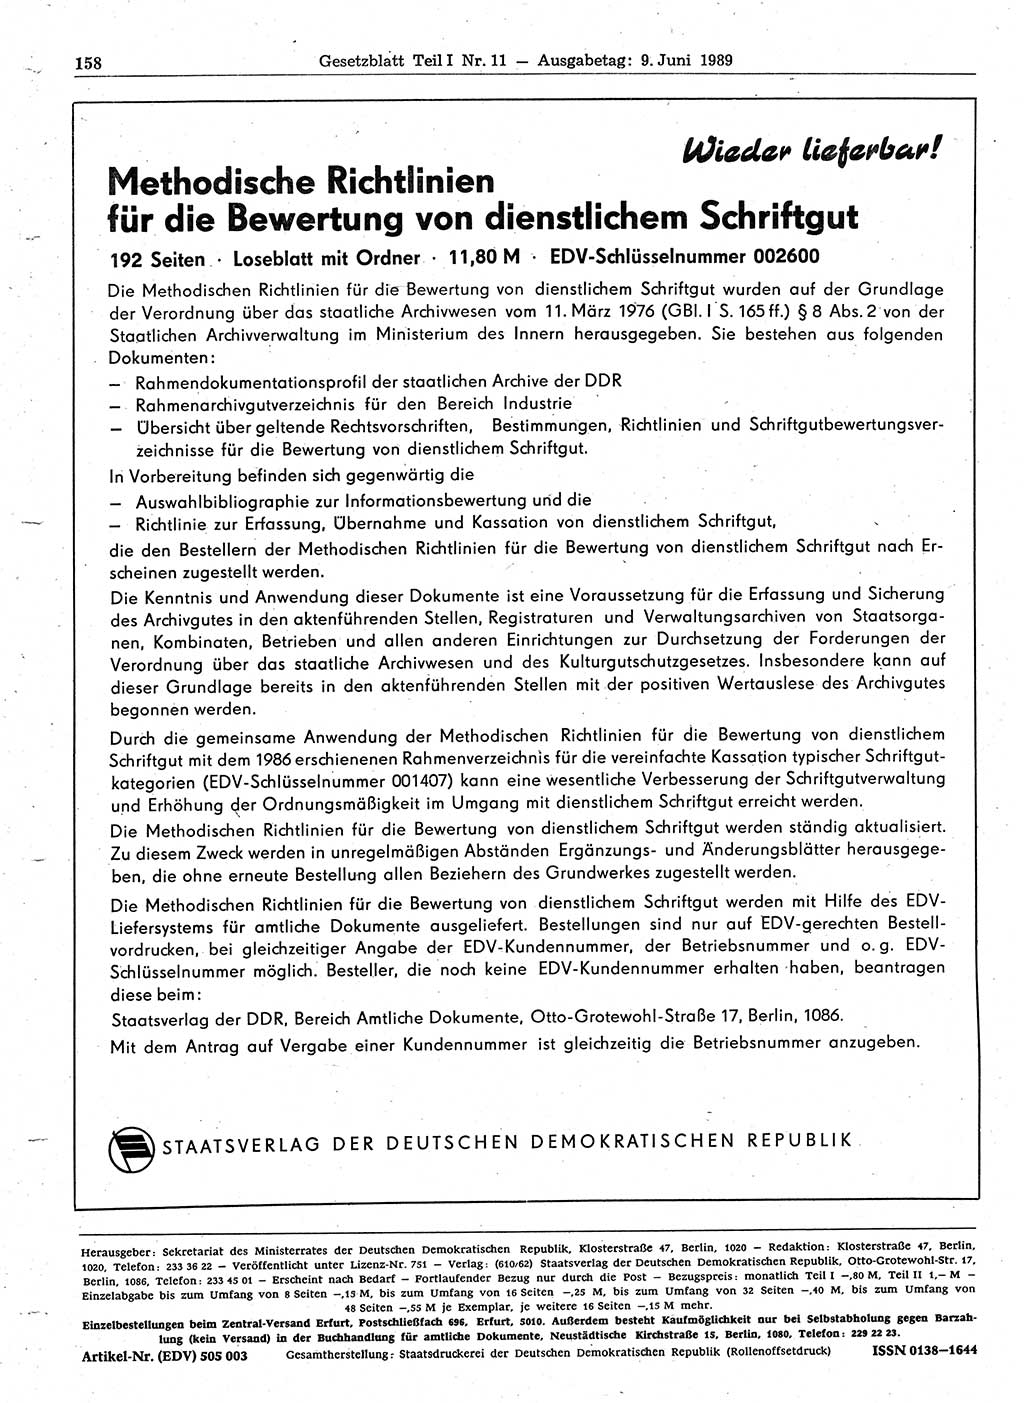 Gesetzblatt (GBl.) der Deutschen Demokratischen Republik (DDR) Teil Ⅰ 1989, Seite 158 (GBl. DDR Ⅰ 1989, S. 158)